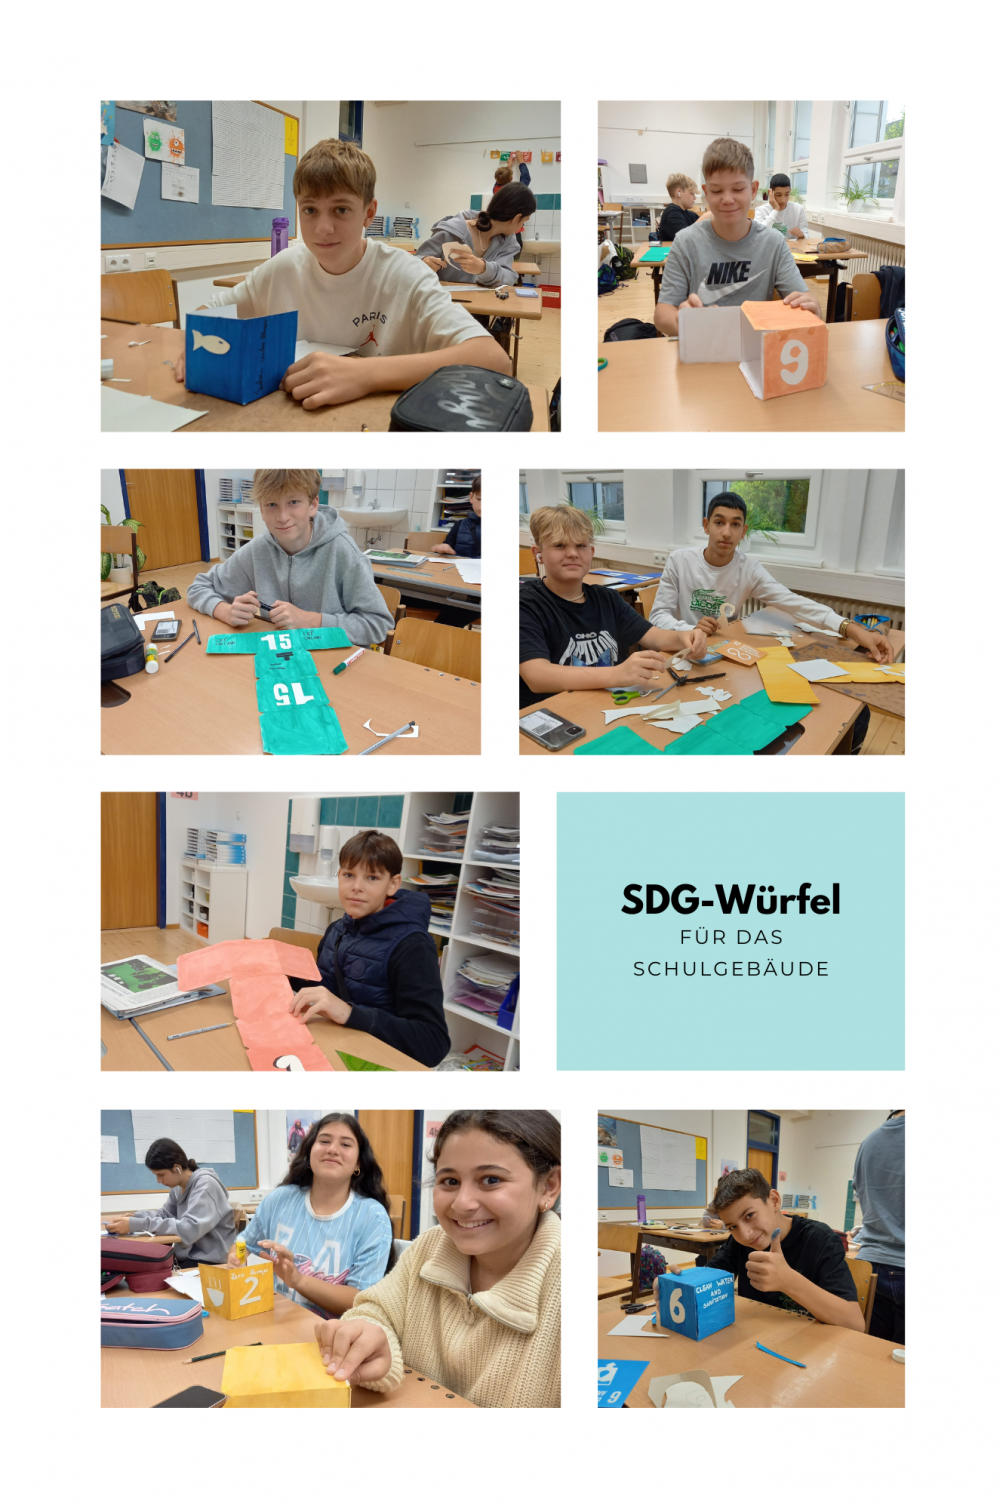 SDG-Würfel für das Schulgebäude